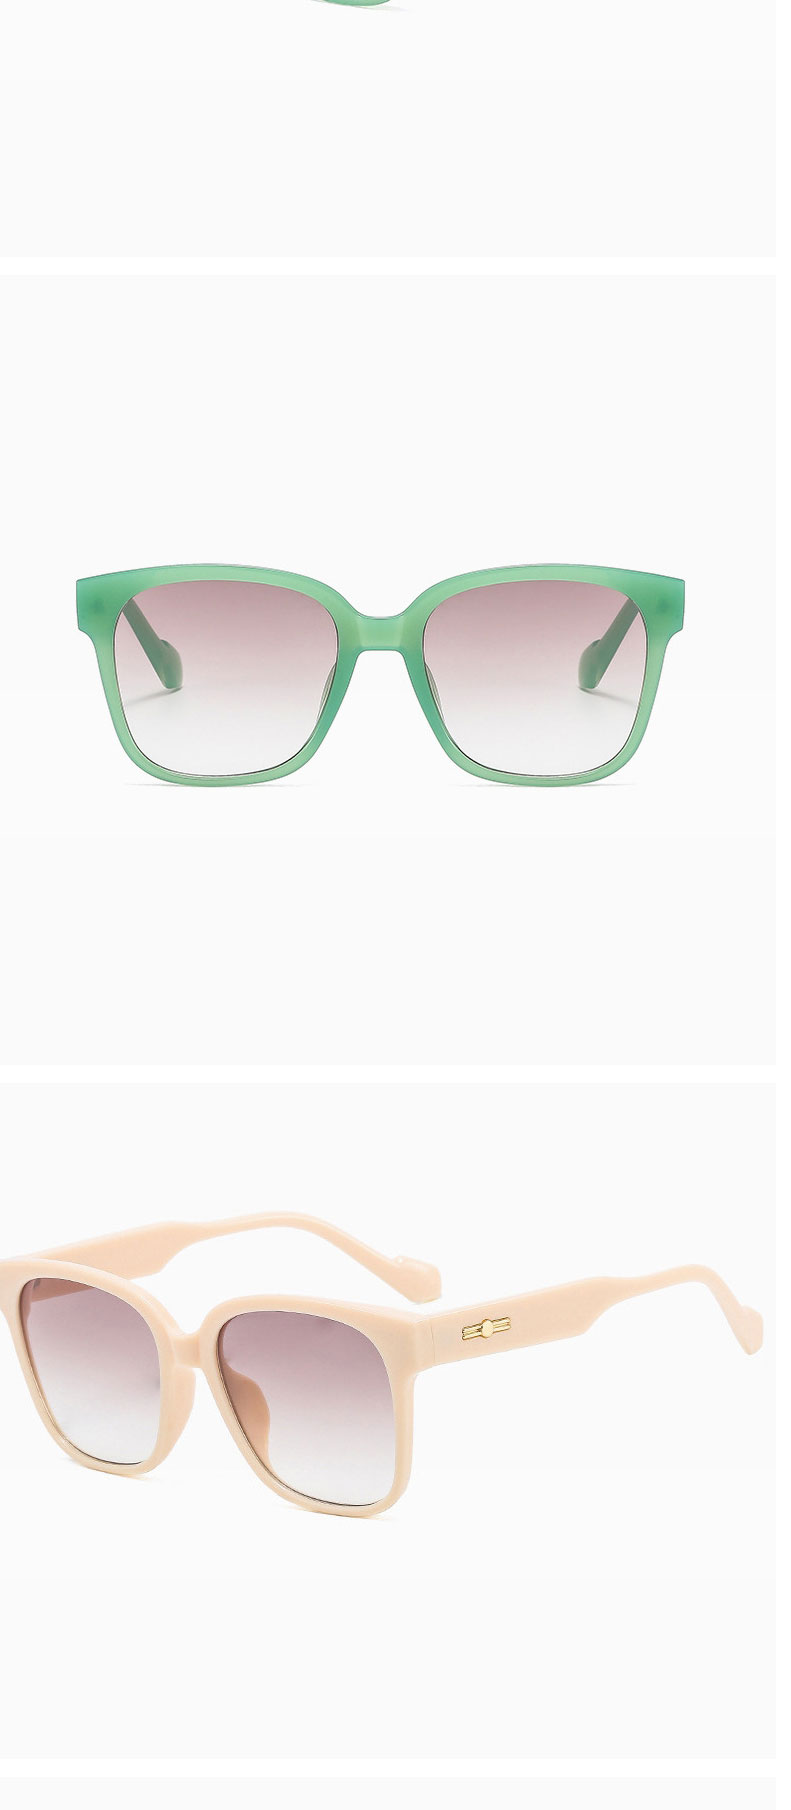 Fashion Jelly Green Gray Square Wide Leg Sunglasses,Women Sunglasses